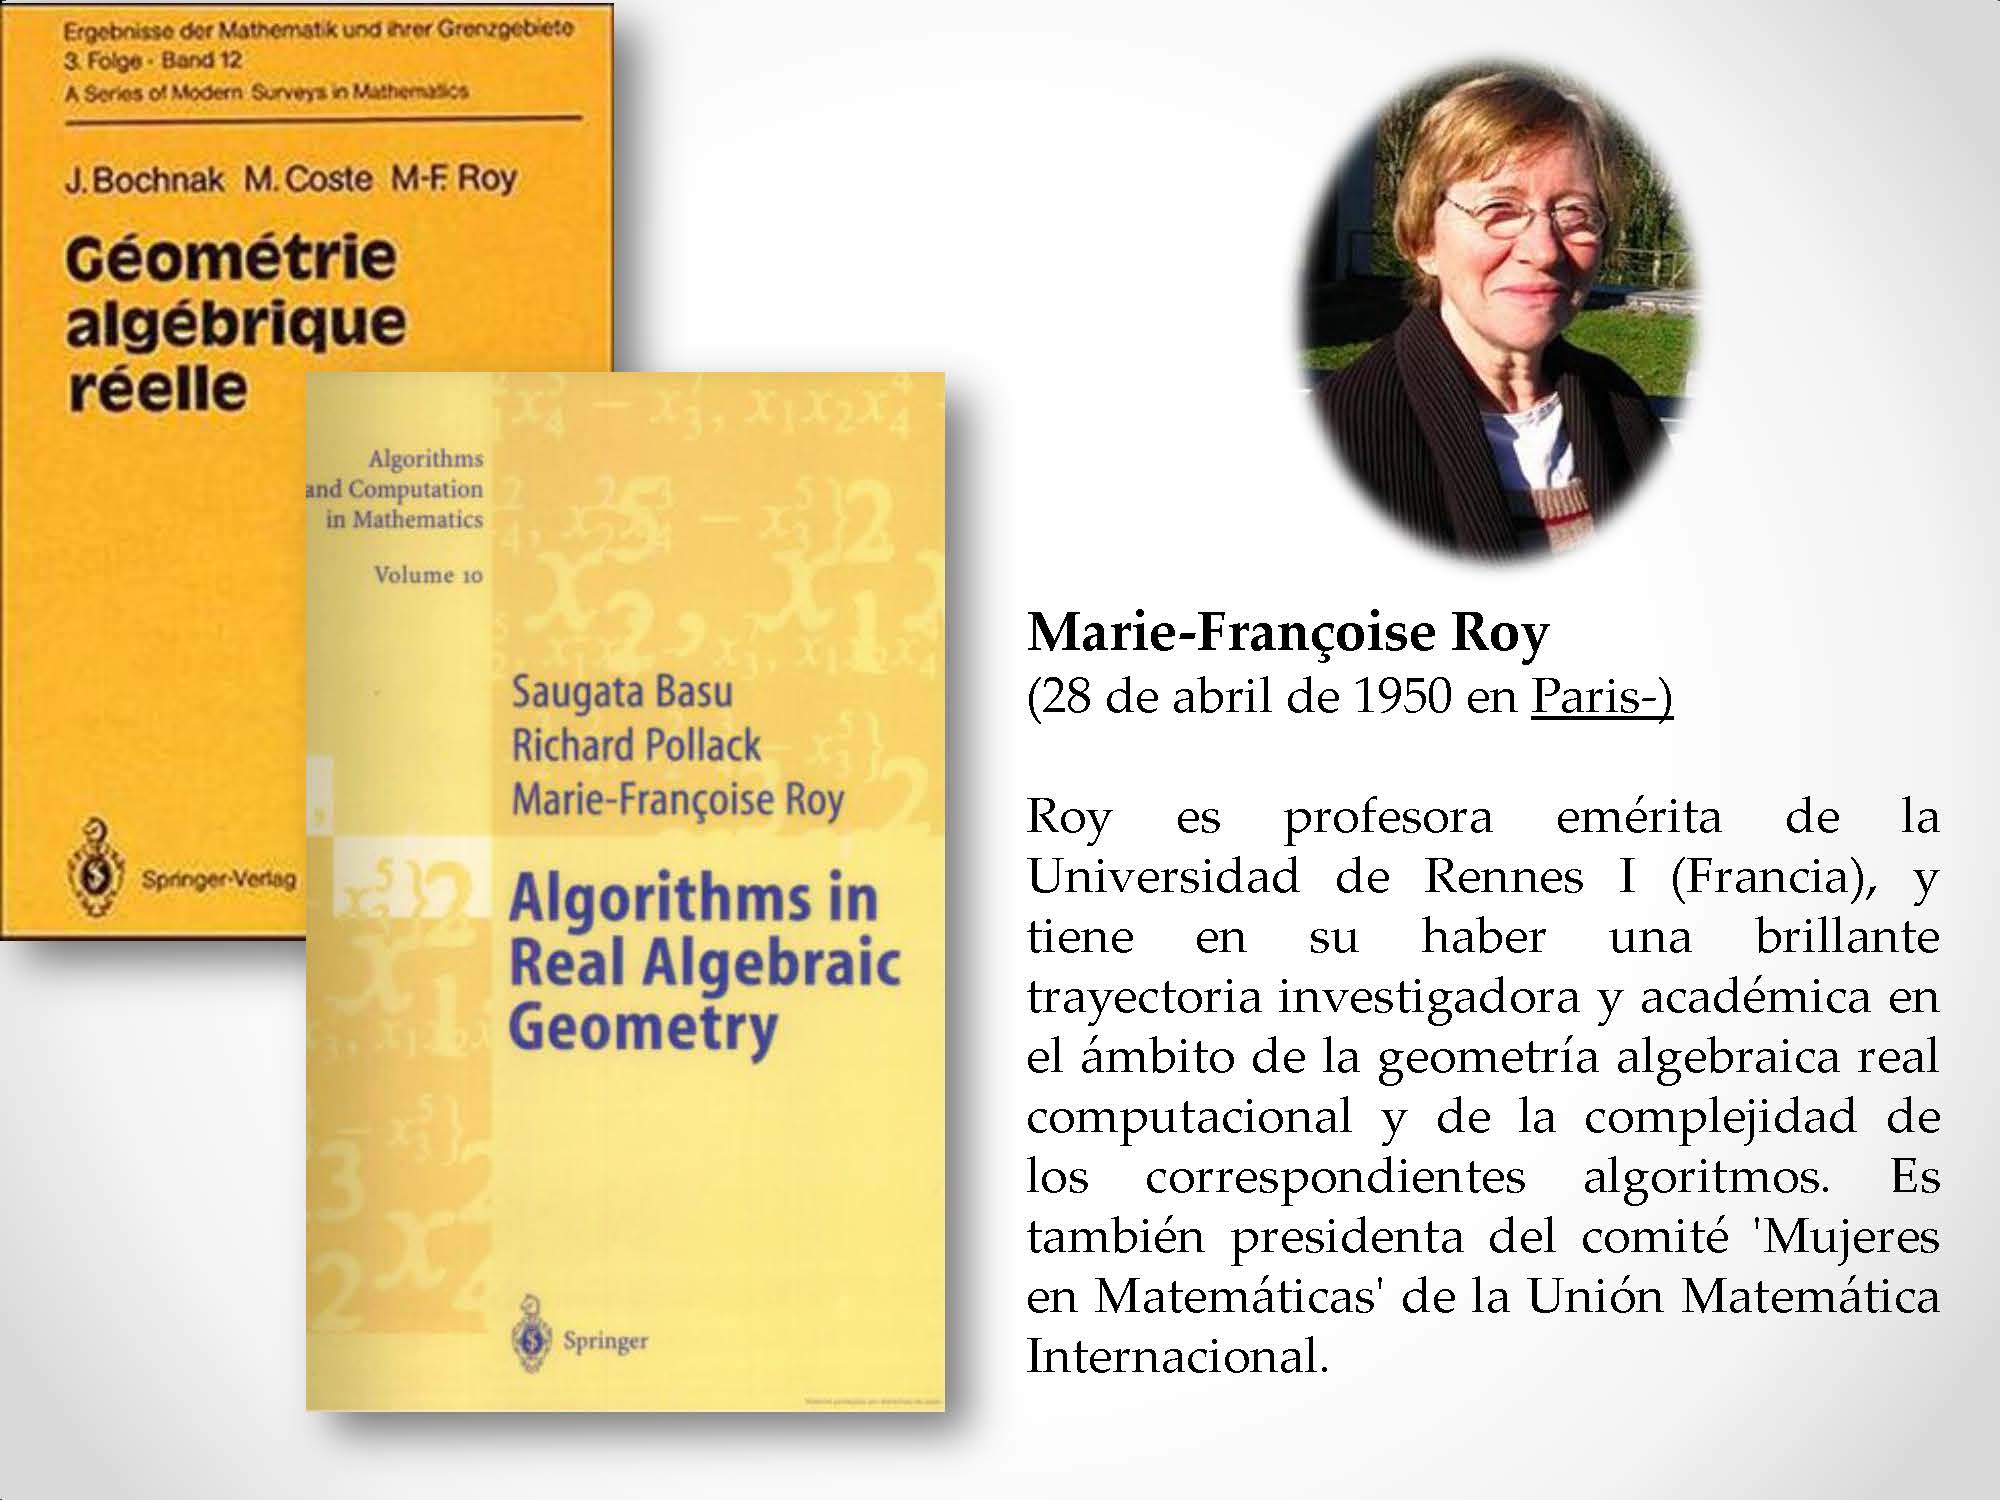 Marie-Françoise Roy (28 de abril de 1950 en Paris-) Roy es profesora emérita de la Universidad de Rennes I (Francia), y tiene en su haber una brillante trayectoria investigadora y académica en el ámbito de la geometría algebraica real computacional y de la complejidad de los correspondientes algoritmos. Es también presidenta del comité 'Mujeres en Matemáticas' de la Unión Matemática Internacional.